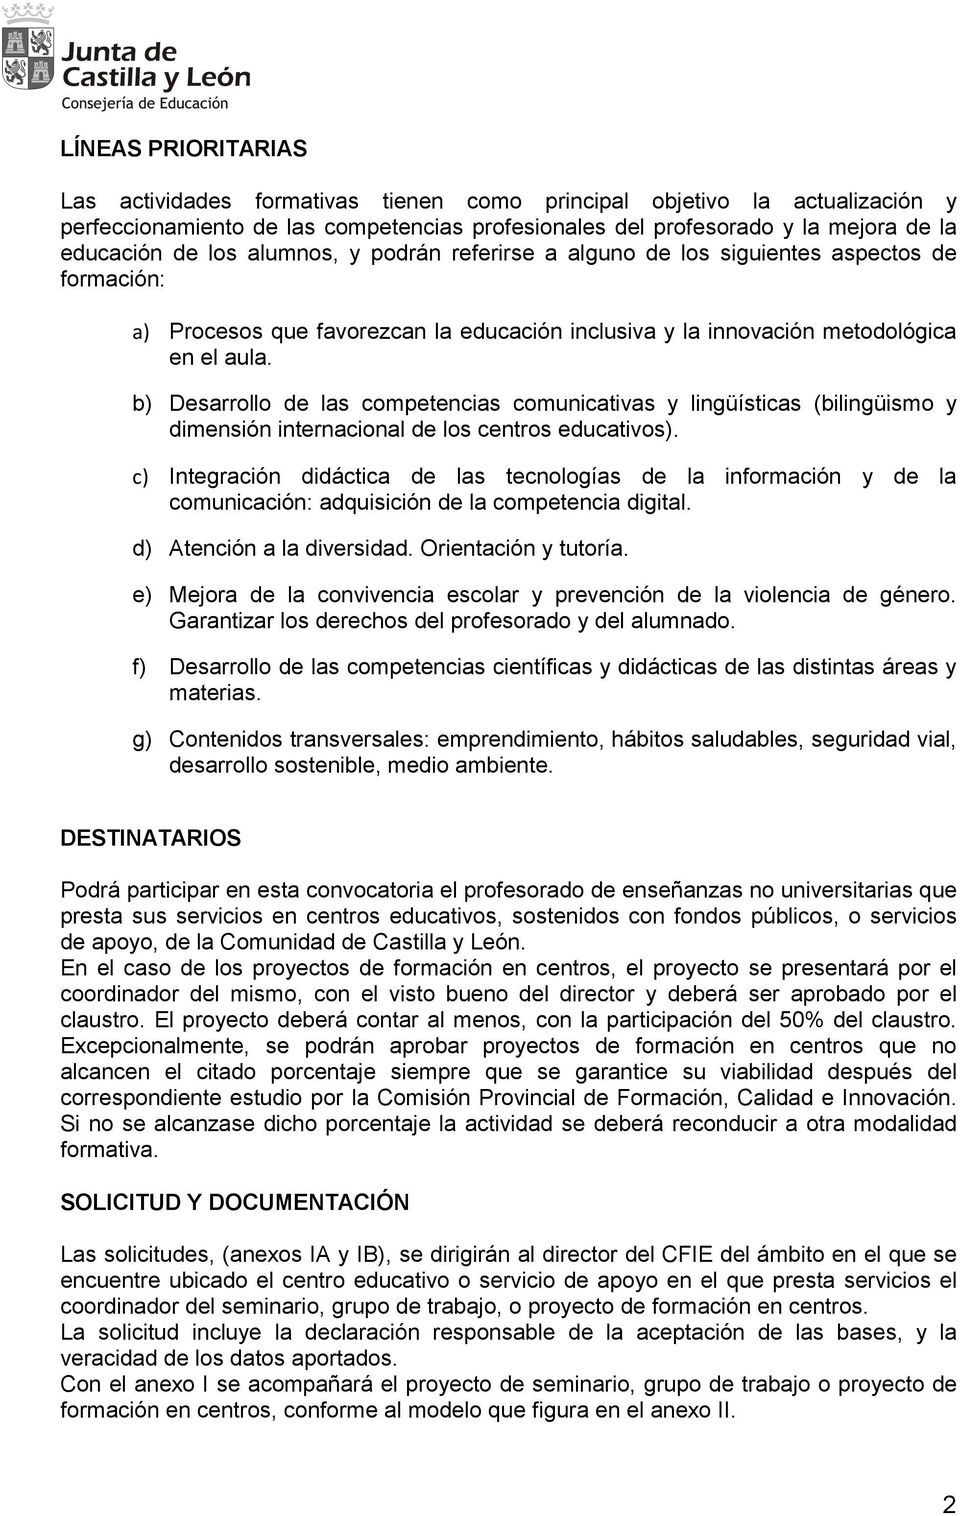 b) Desarrollo de las competencias comunicativas y lingüísticas (bilingüismo y dimensión internacional de los centros educativos).